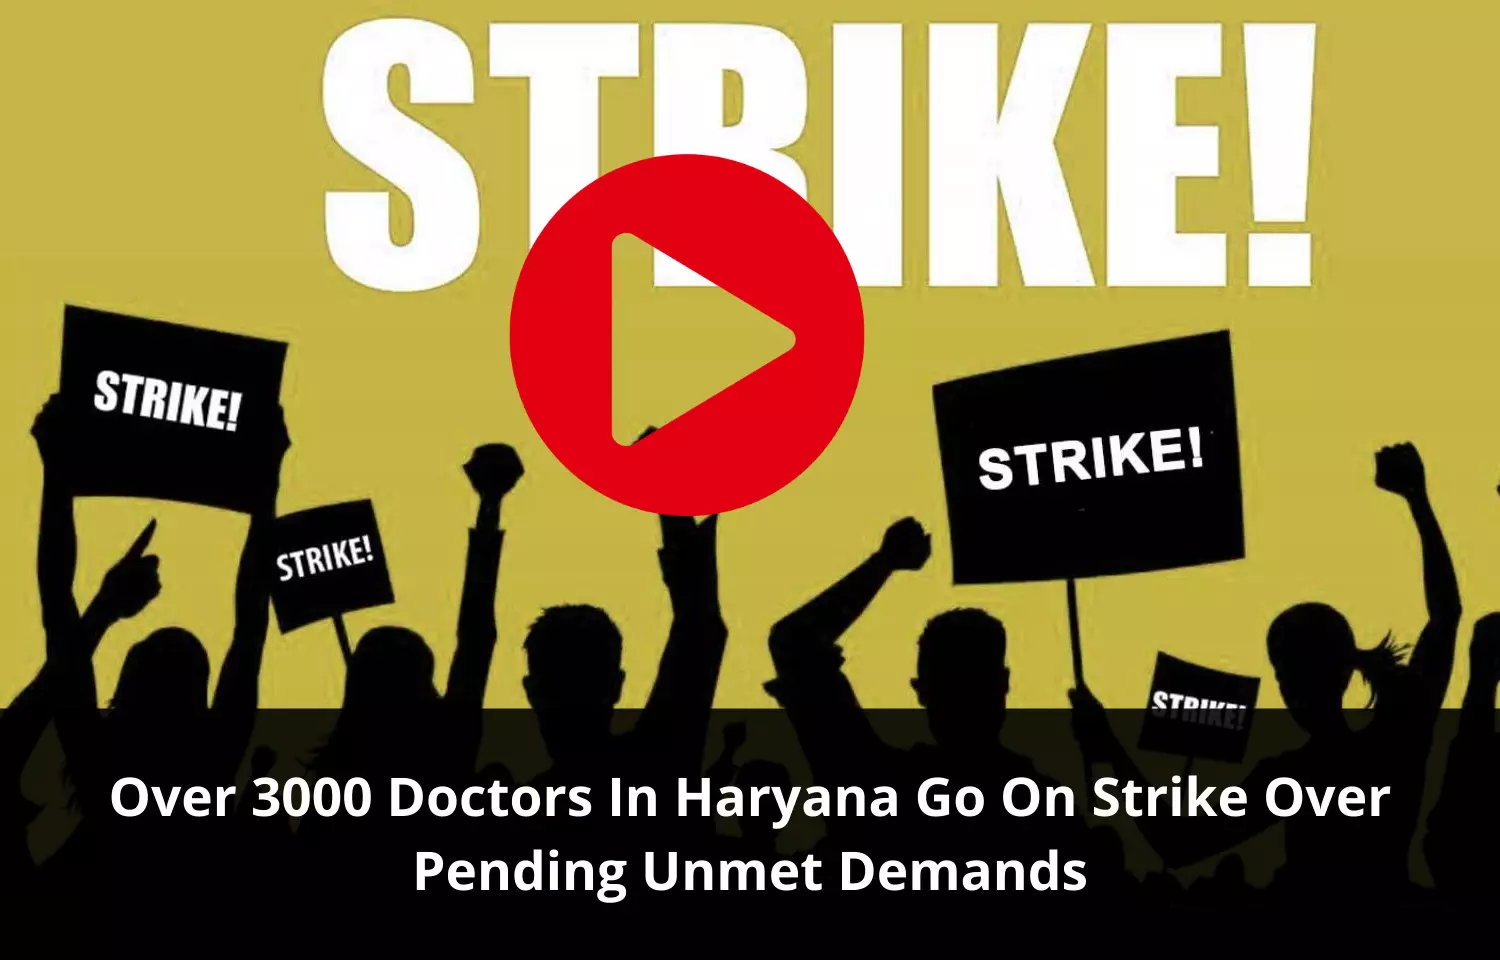 Doctors strike in Haryana over pending demands